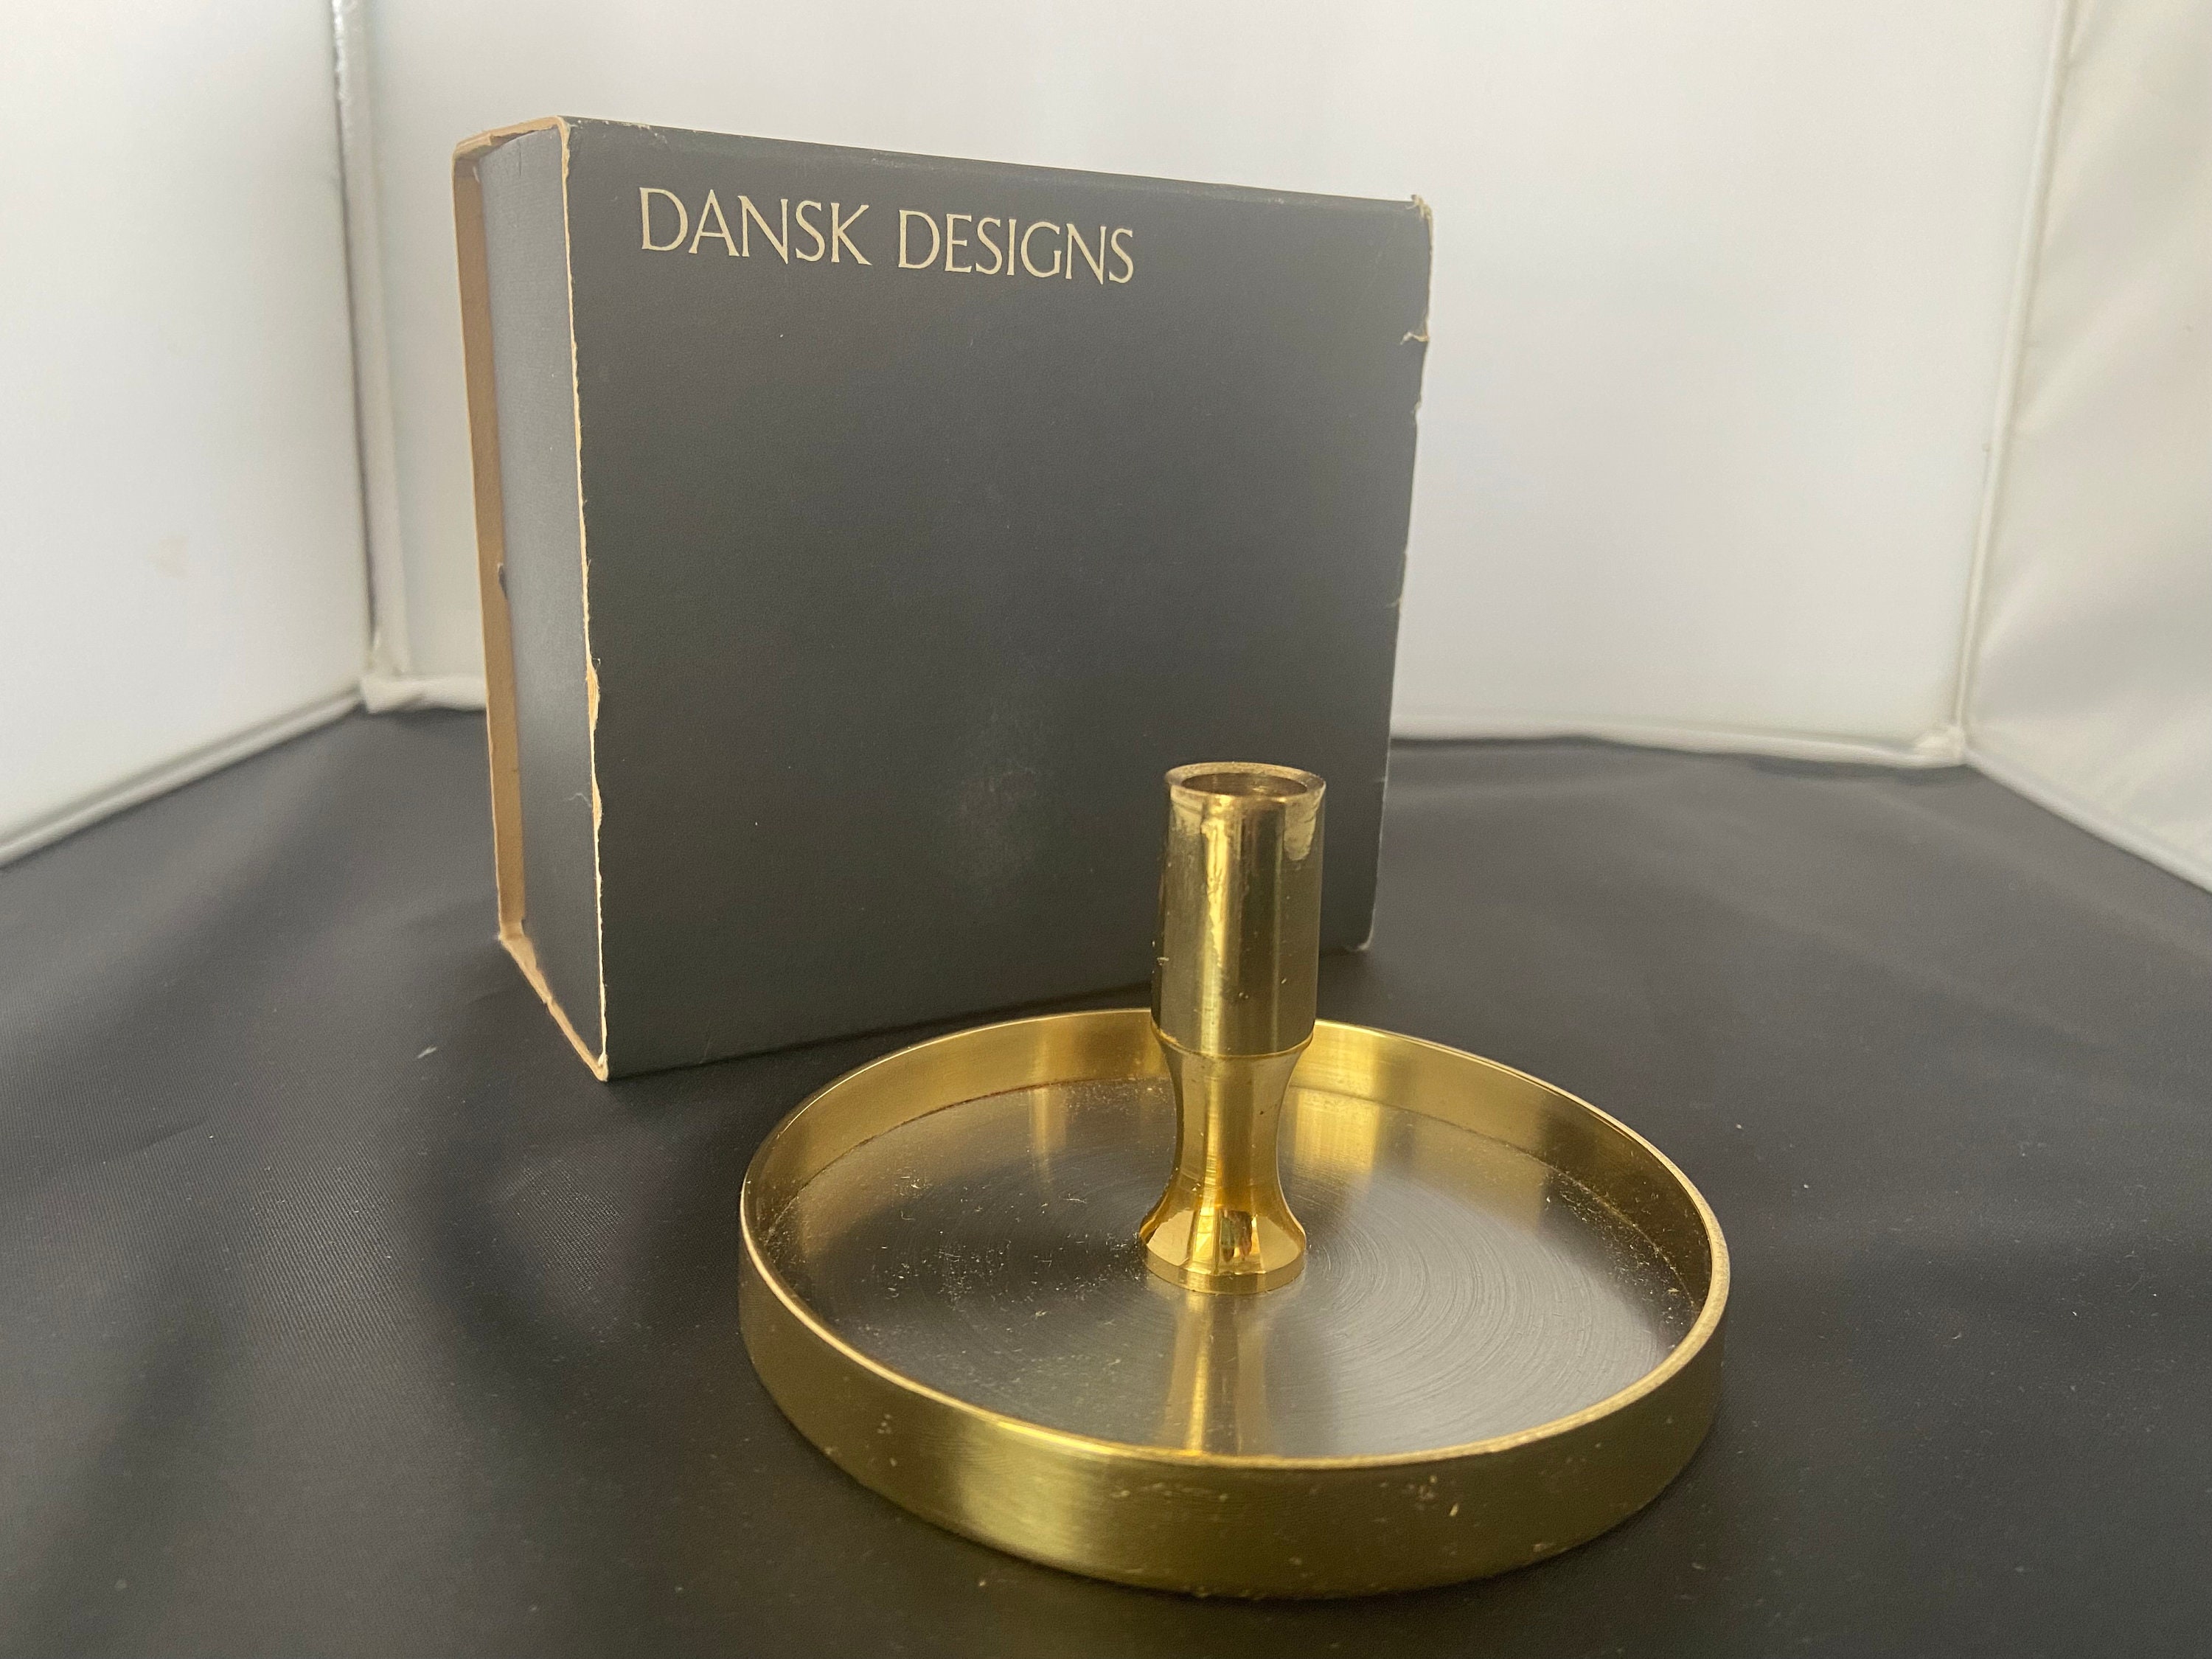 Sold at Auction: Dansk Designs Denmark, Dansk Designs Denmark IHQ